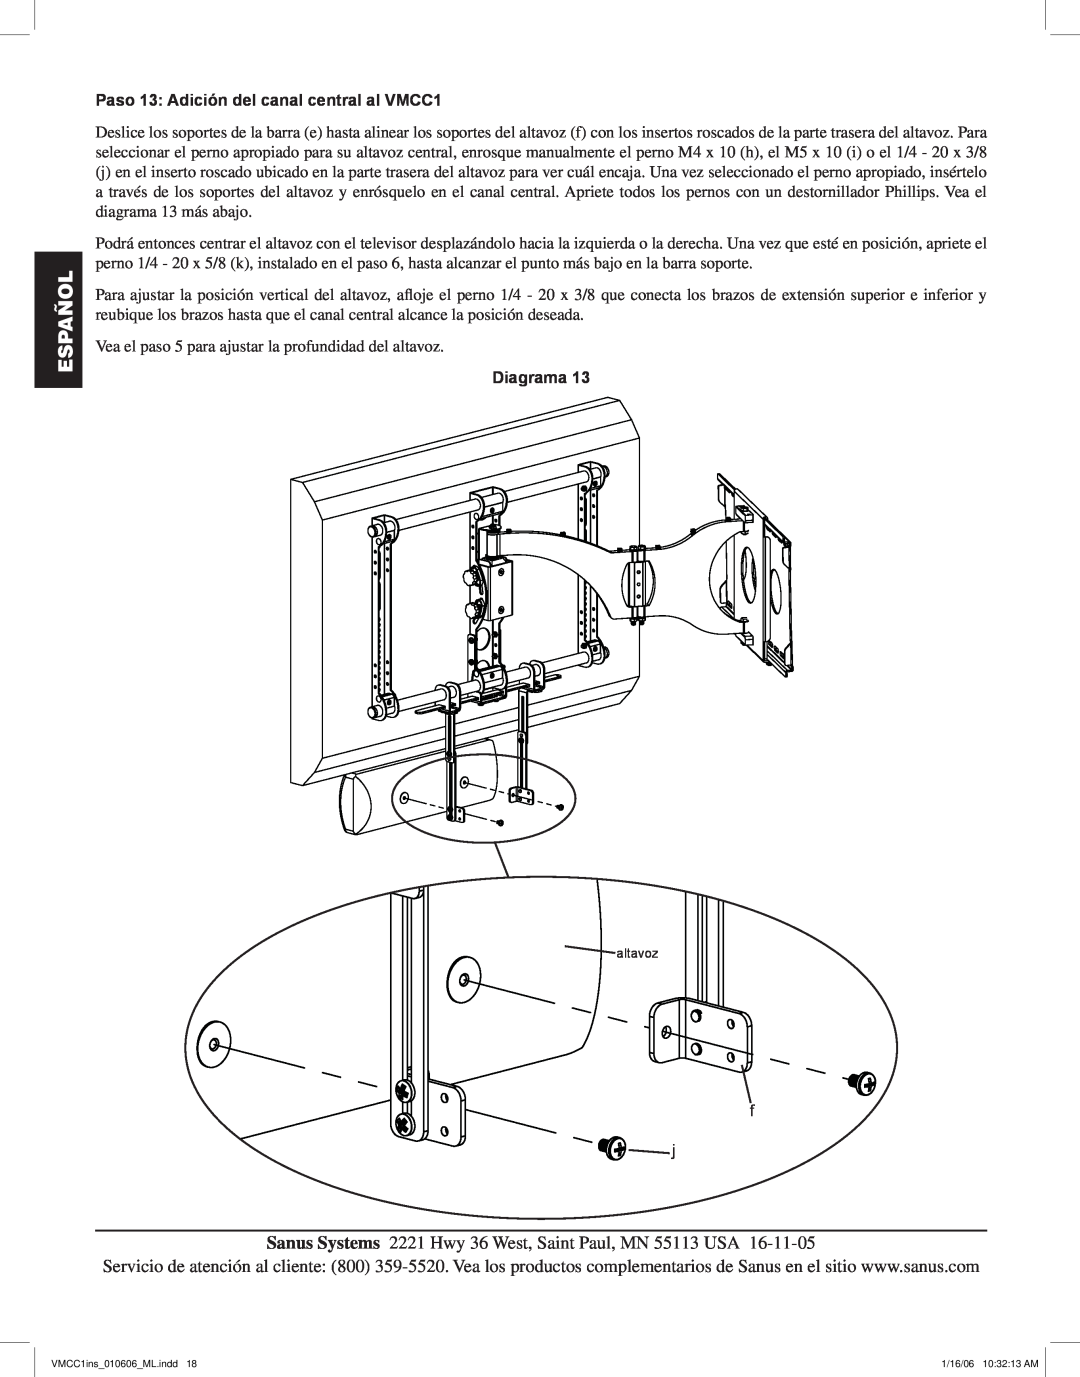 Sanus Systems manual Paso 13 Adición del canal central al VMCC1, Español, Diagrama 